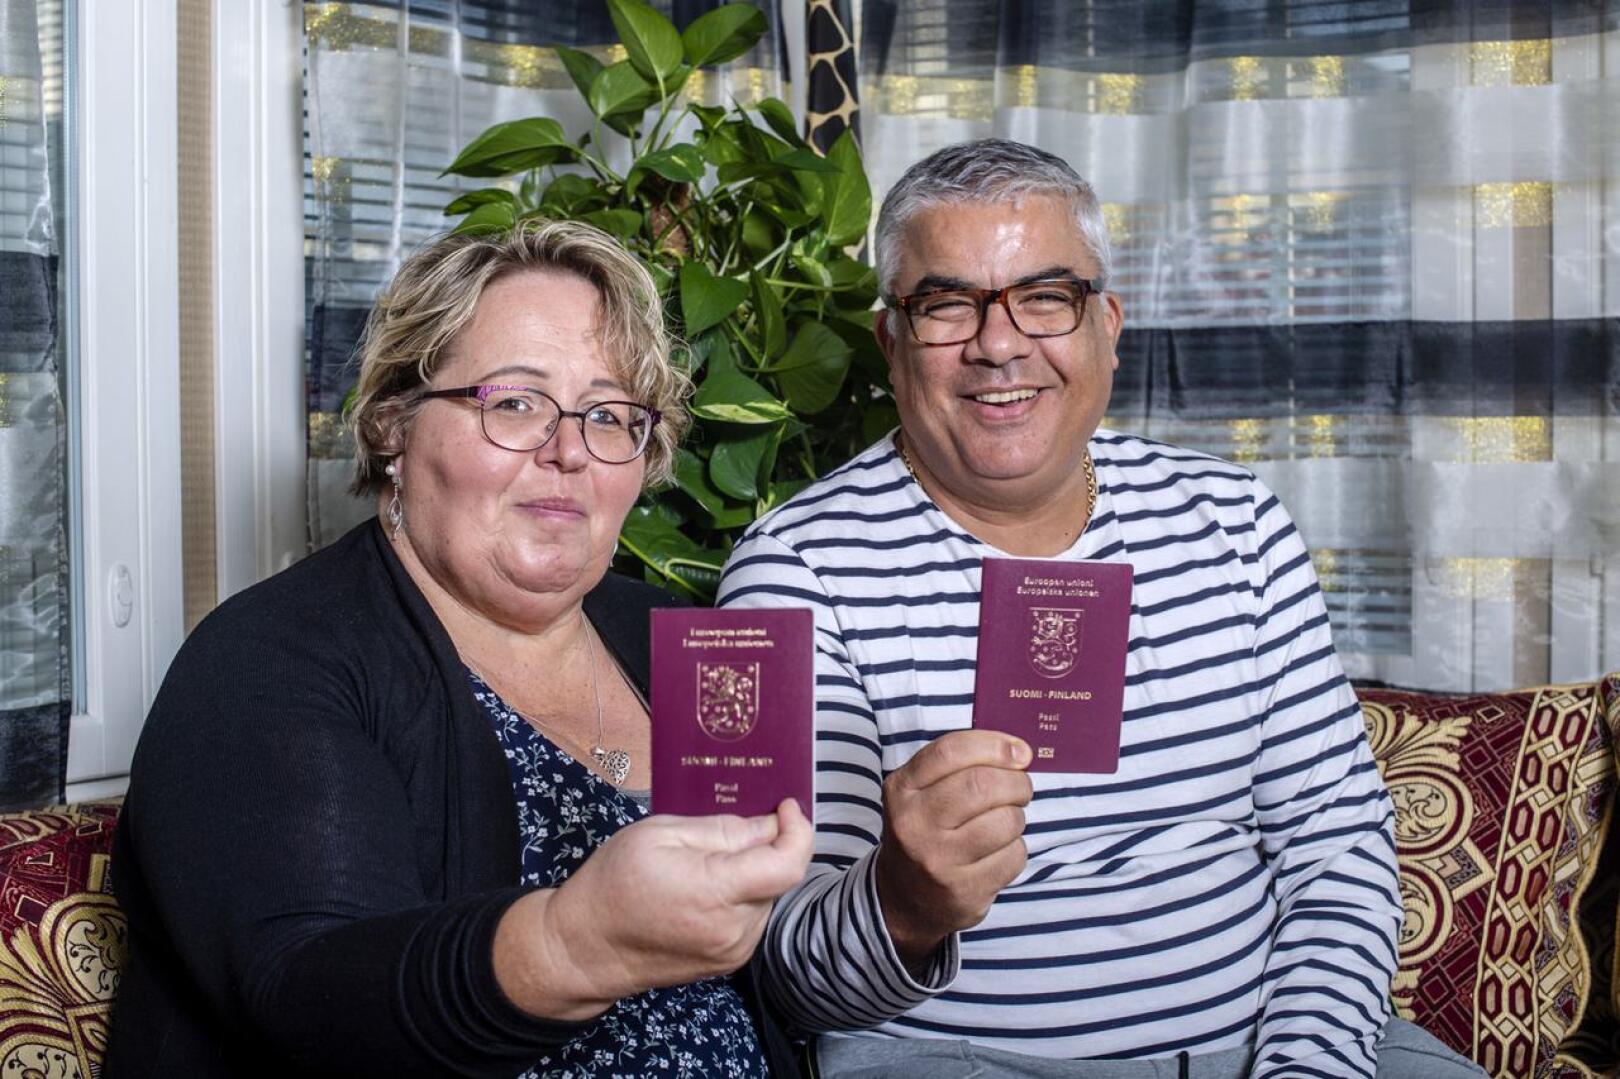 Pirjo ja Samir Ressam ovat olleet naimisissa vuodesta 1998 lähtien. Matkustaminen on heille yhteinen harrastus, samoin matkaohjelmien katsominen ja uusien matkojen suunnitteleminen.